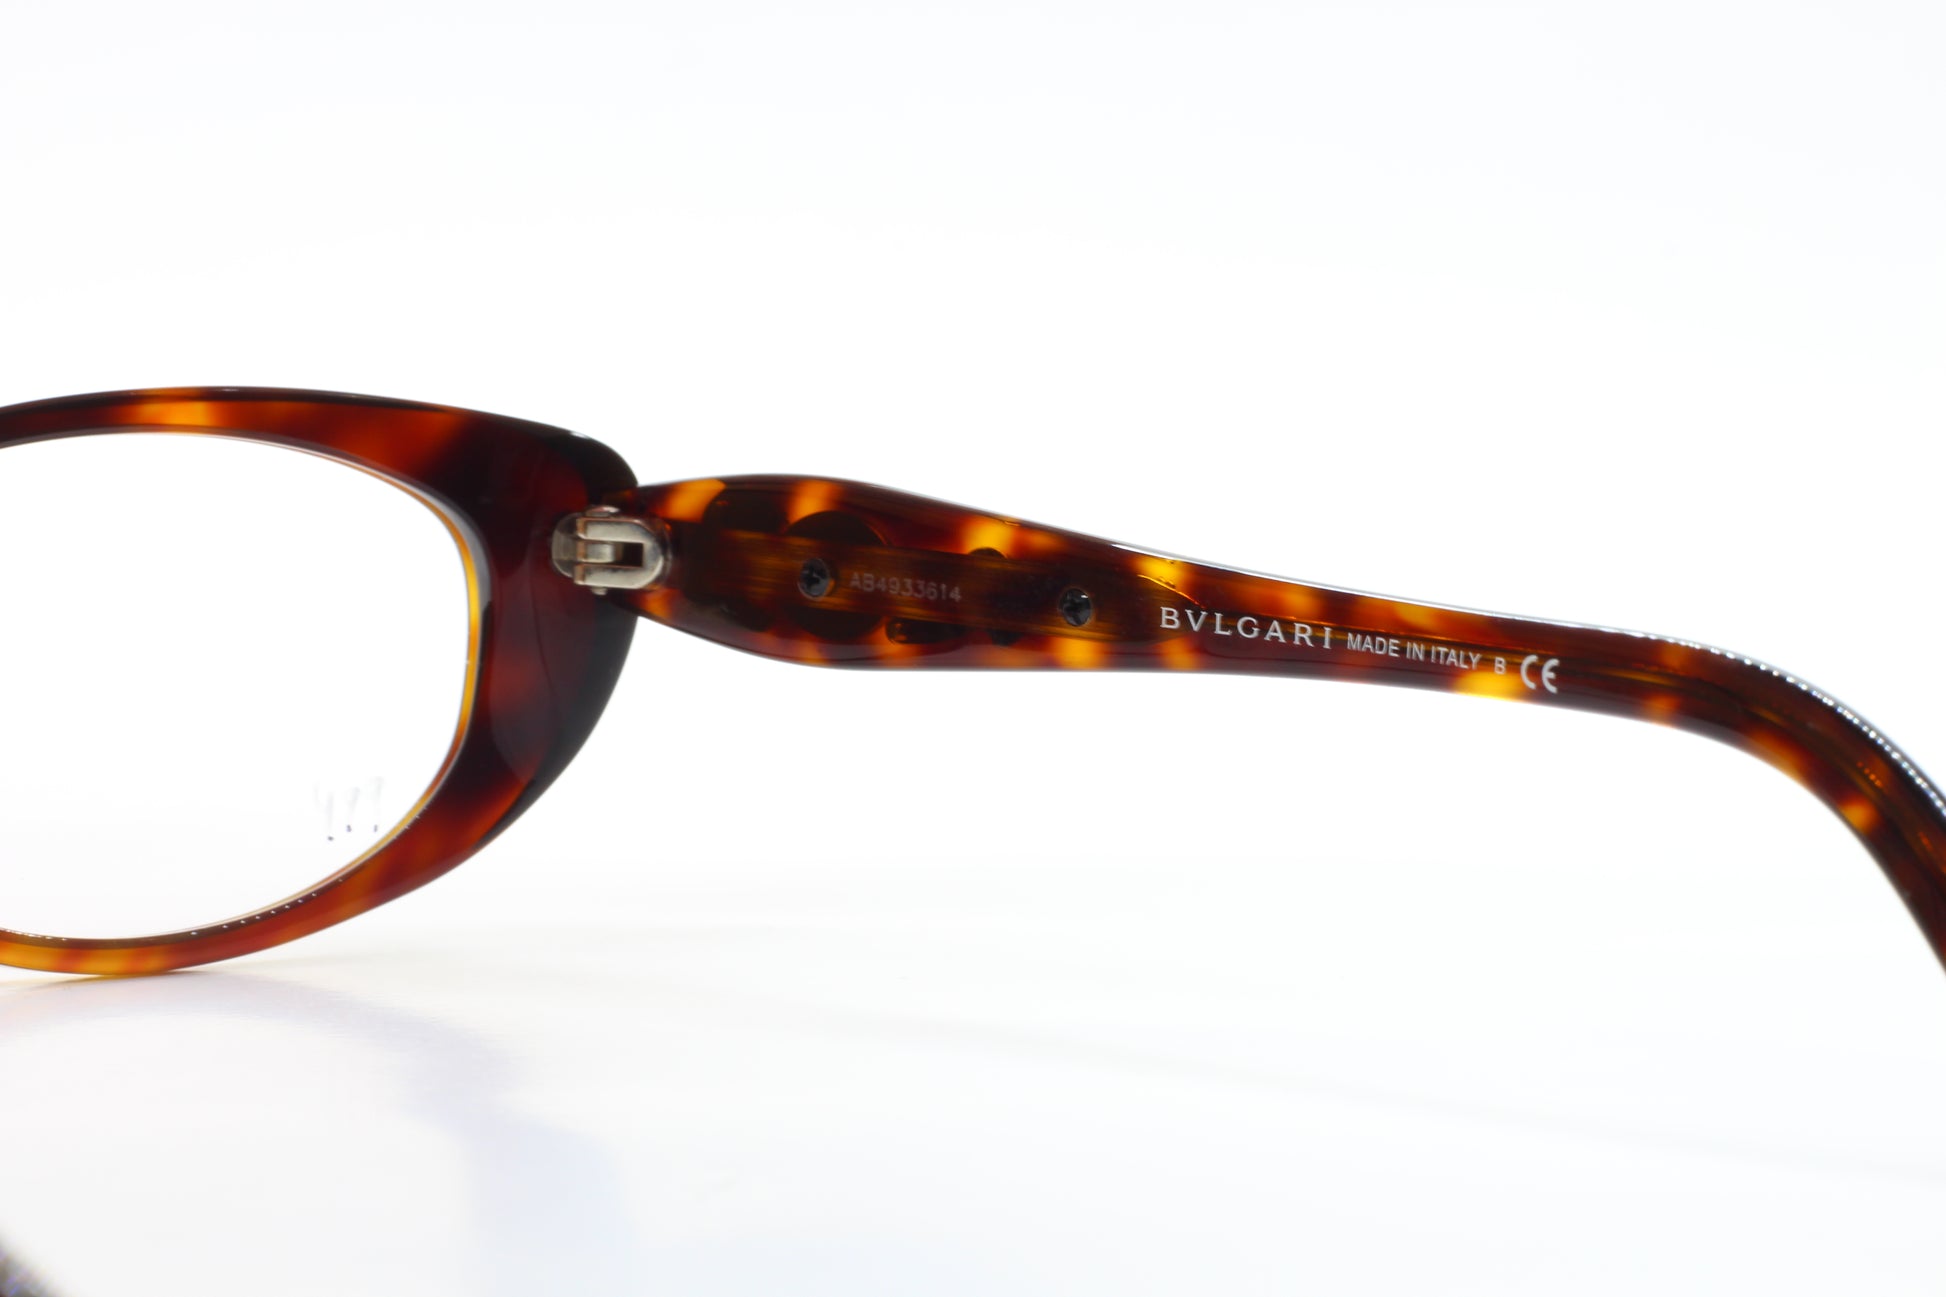 Bvlgari BV4057-B 851 Tortoise Round Cat Eye Full Rim Eyeglasses - Eyeglasses, Women